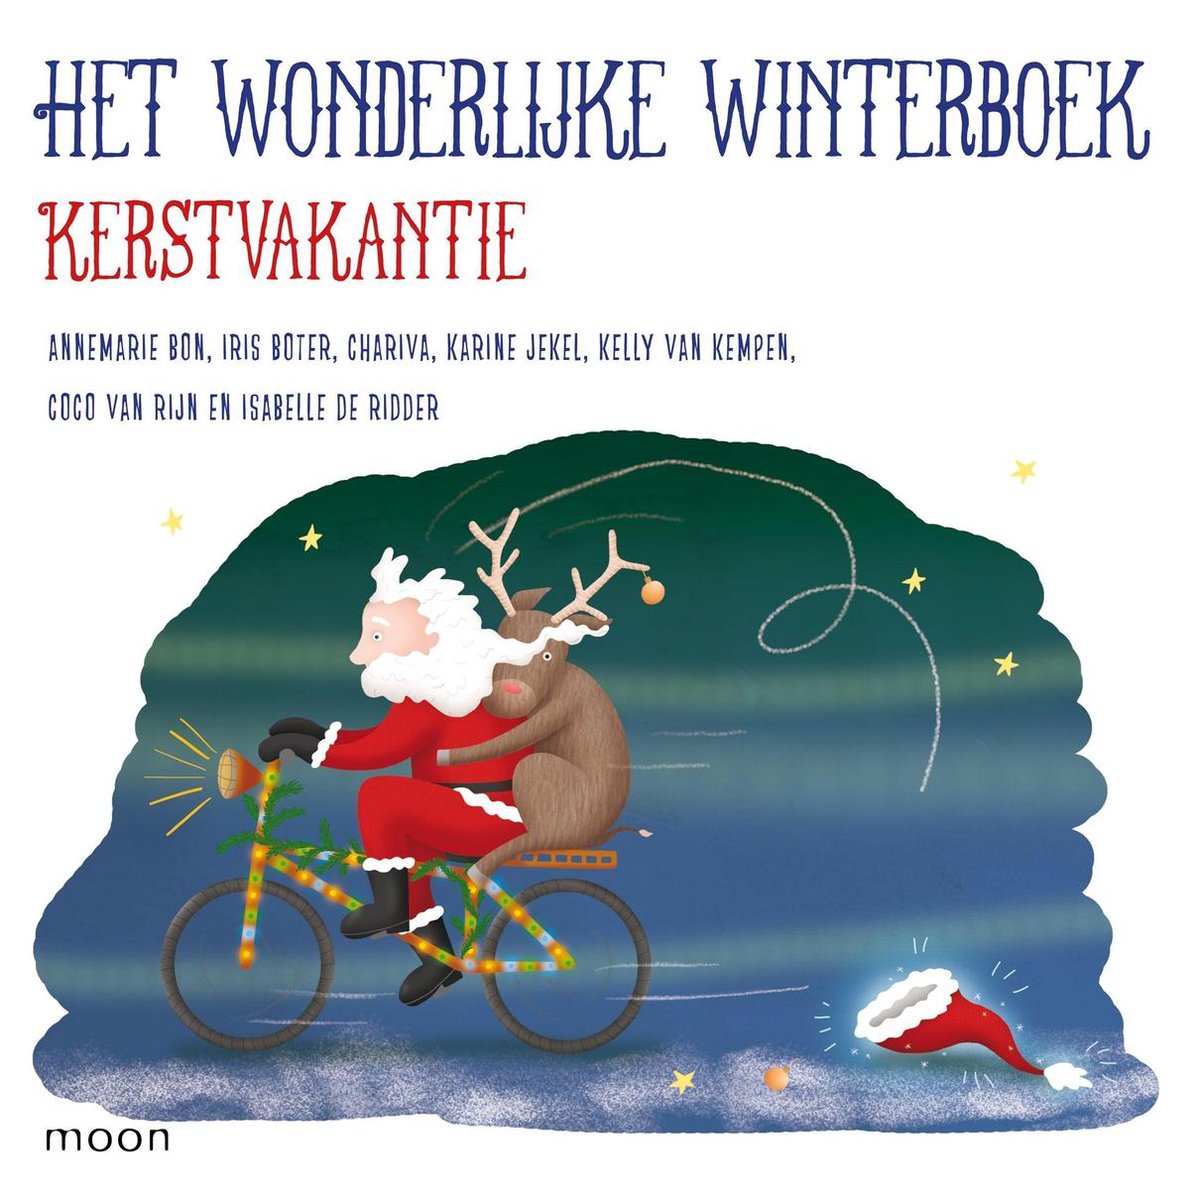 Het wonderlijke winterboek - Kerstvakantie - Cora Sakalli